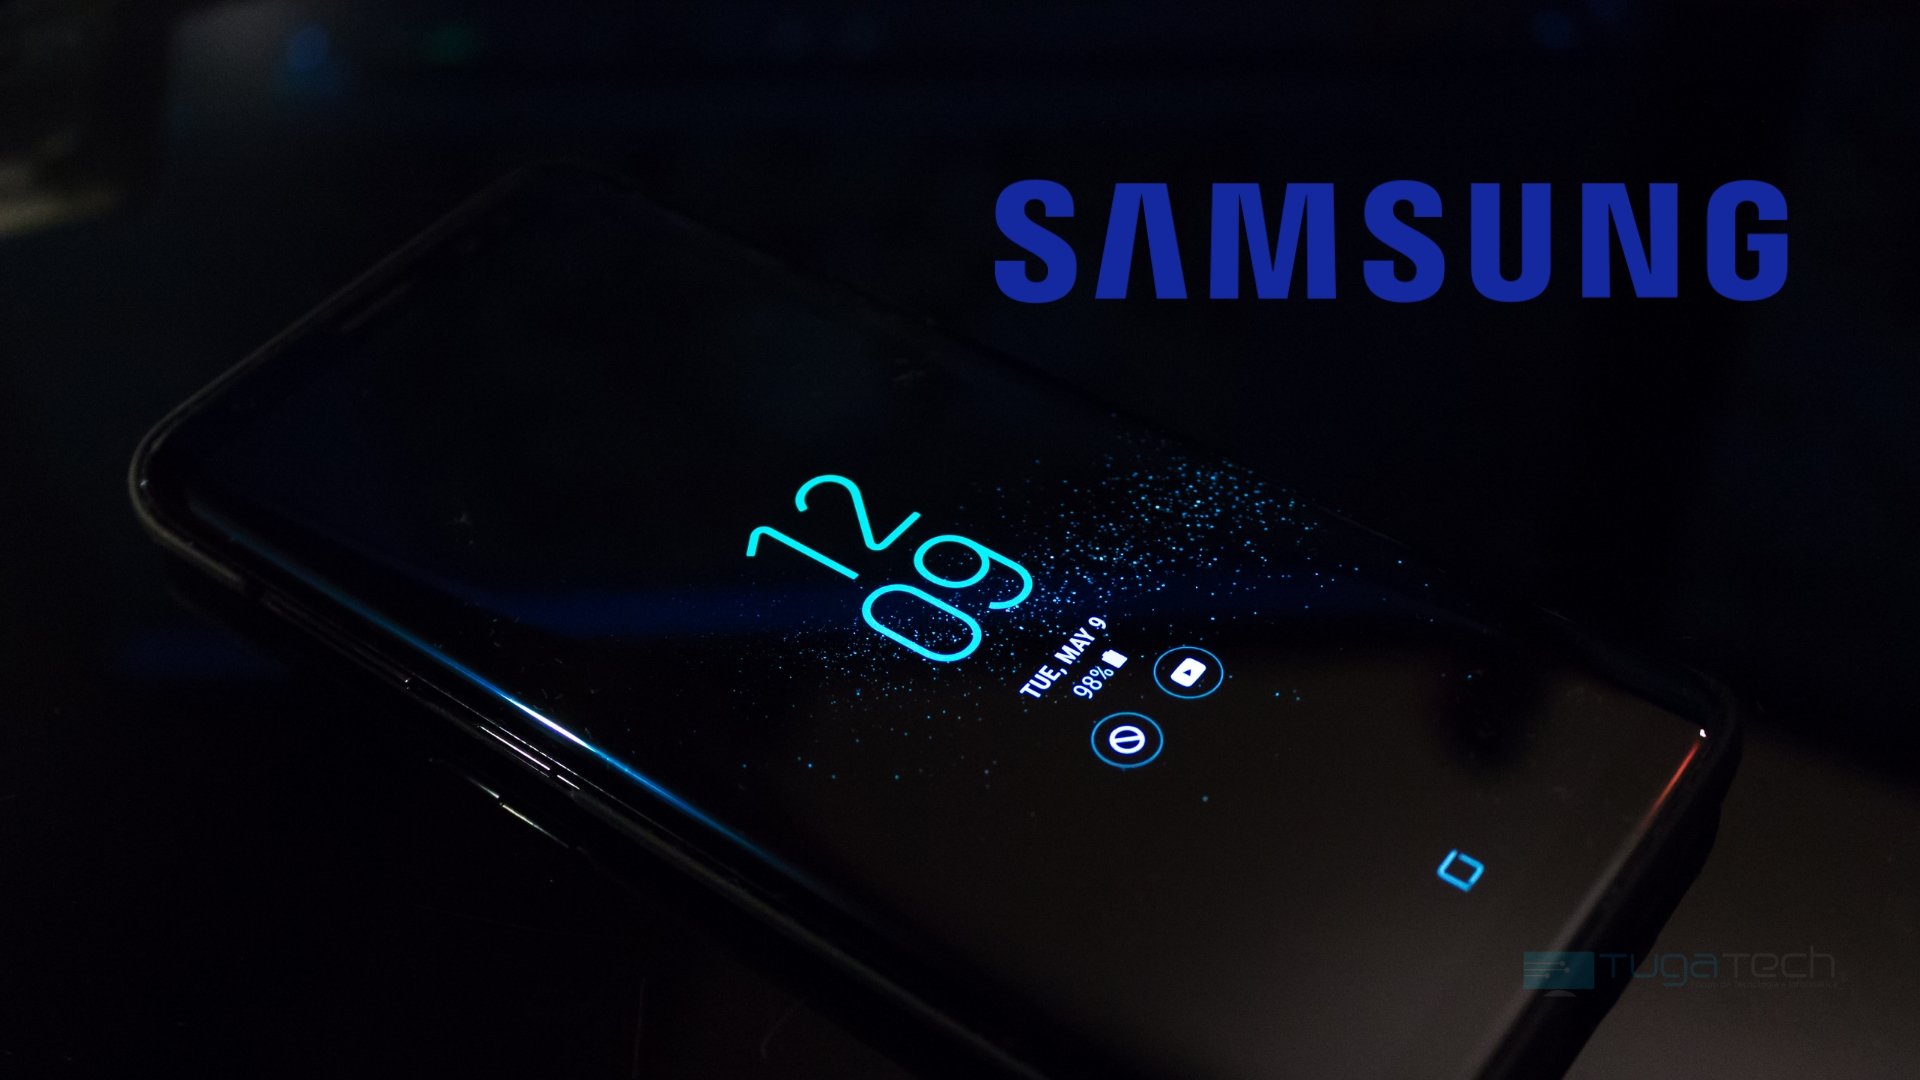 Smartphone da Samsung com logo da empresa